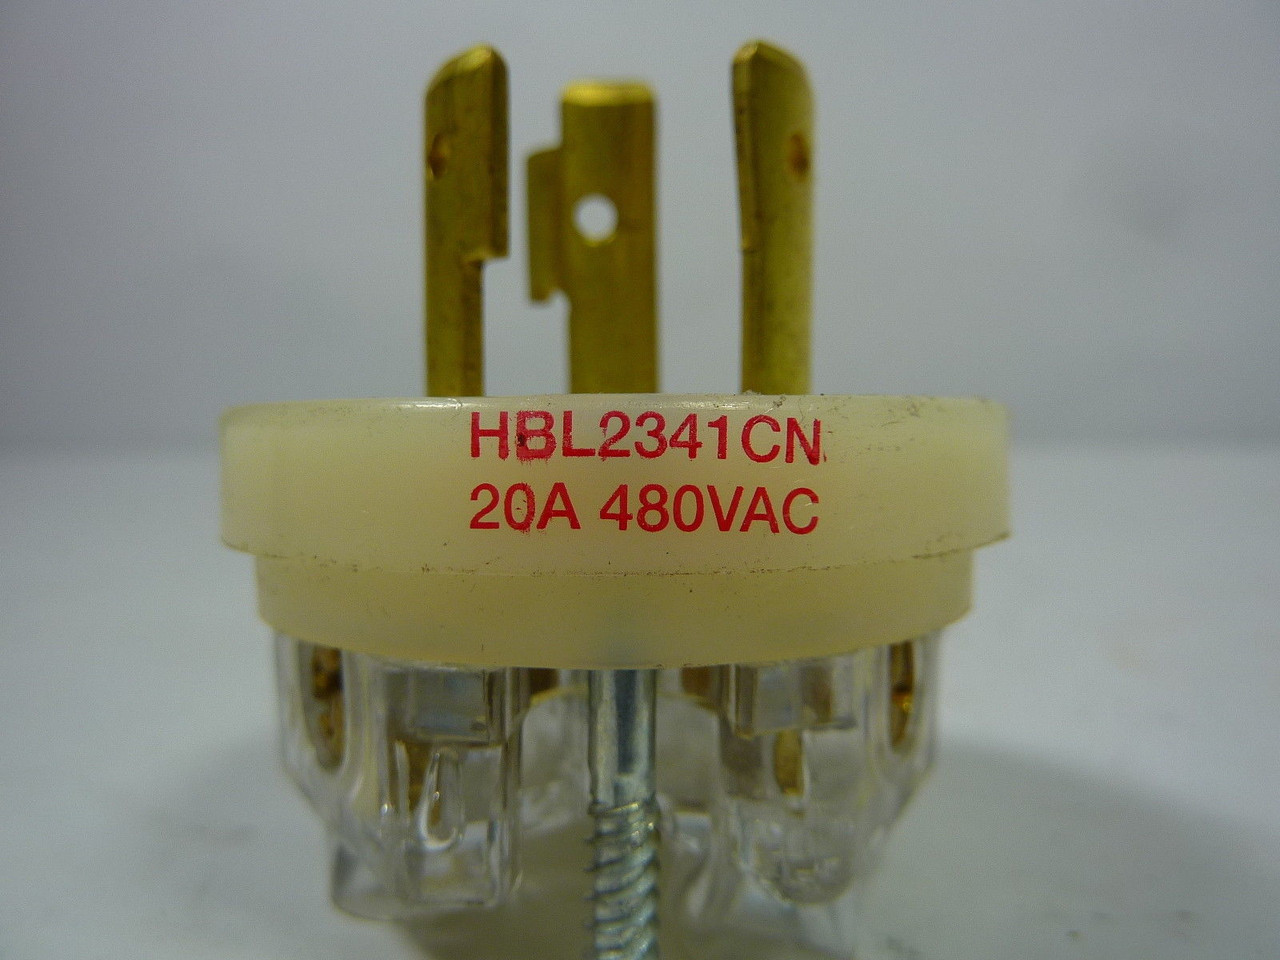 Hubbell HBL2341CN Twist-Lock Plug 20A 480VAC USED